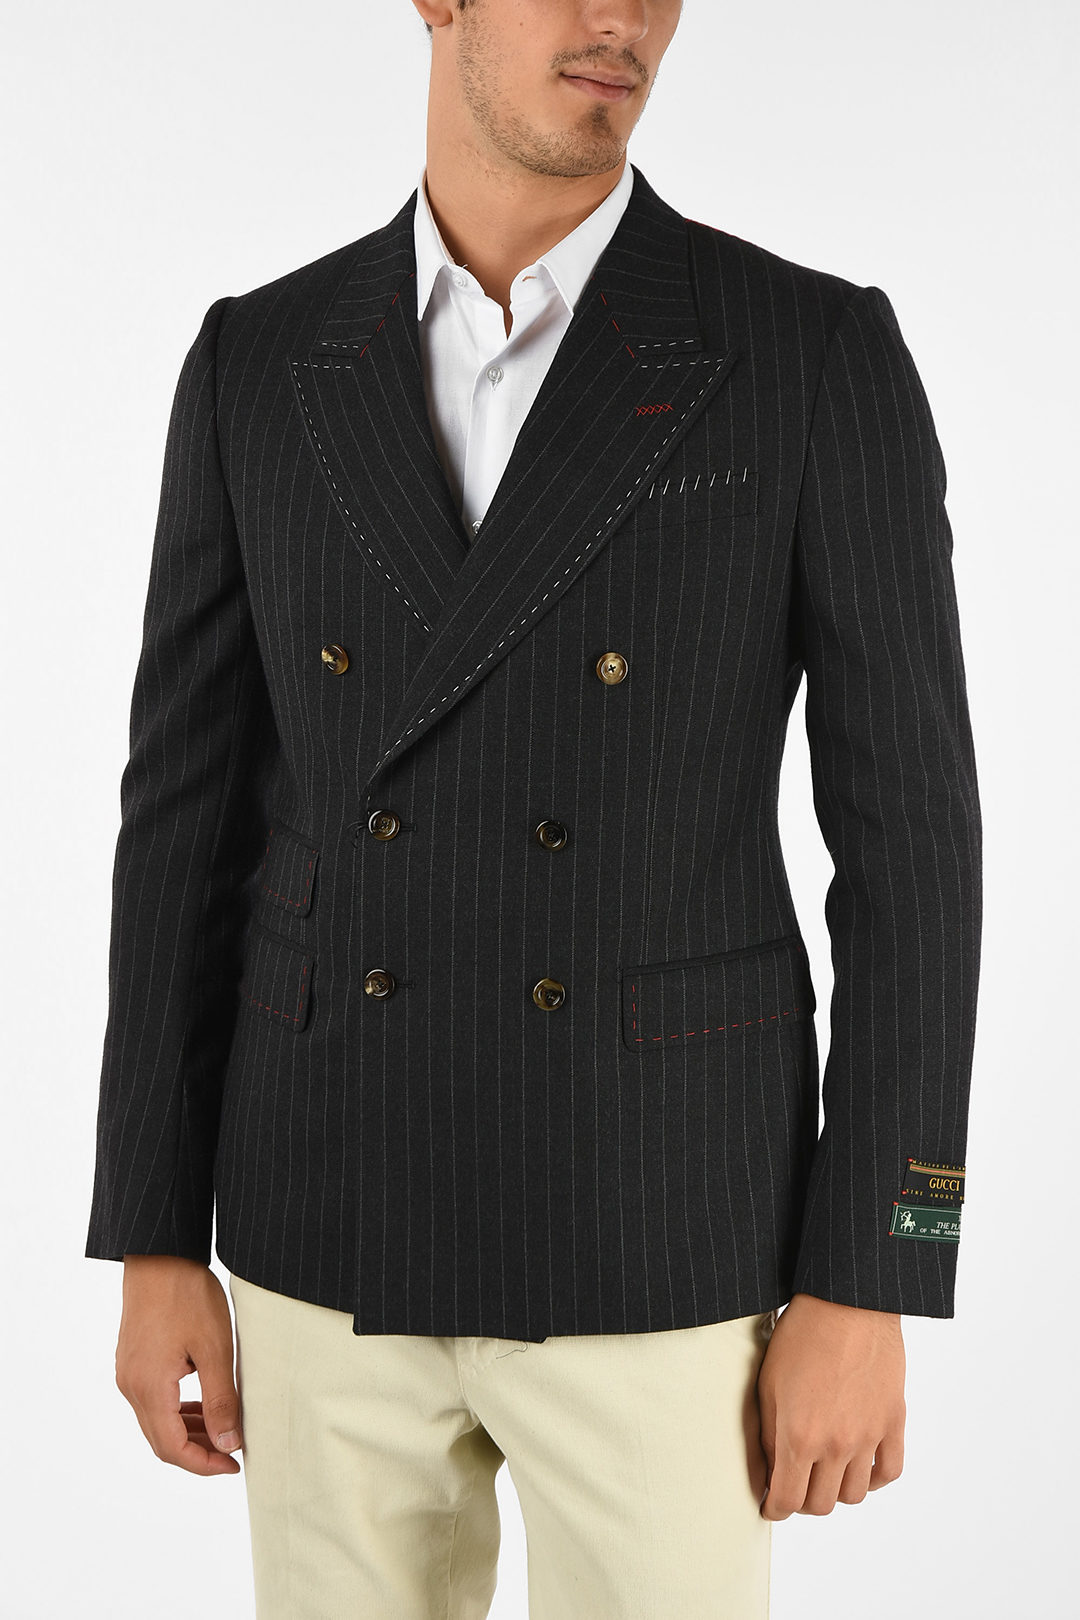 gucci striped blazer